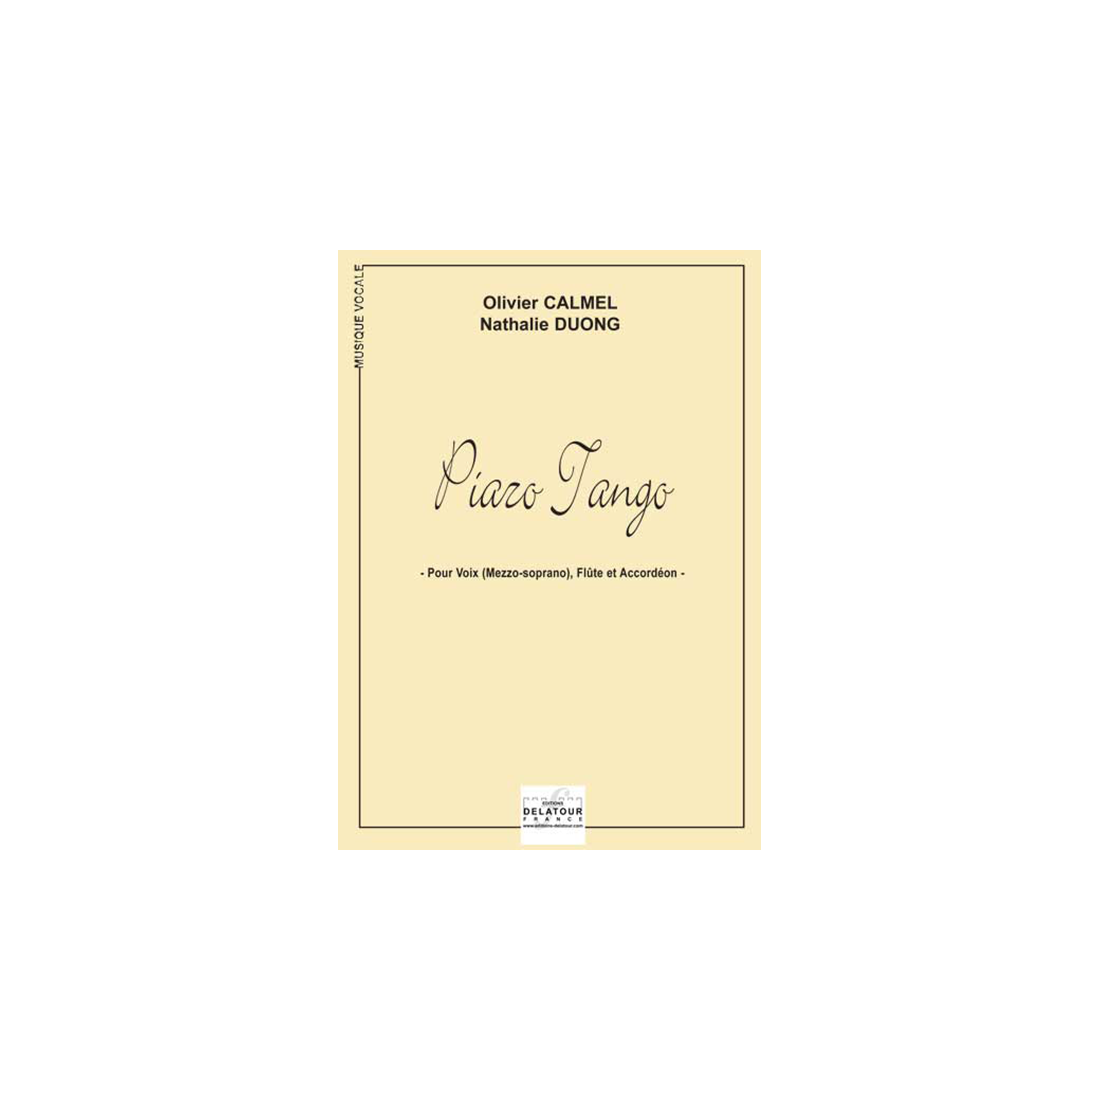 Piazo Tango for mezzo-soprano, flute and accordion